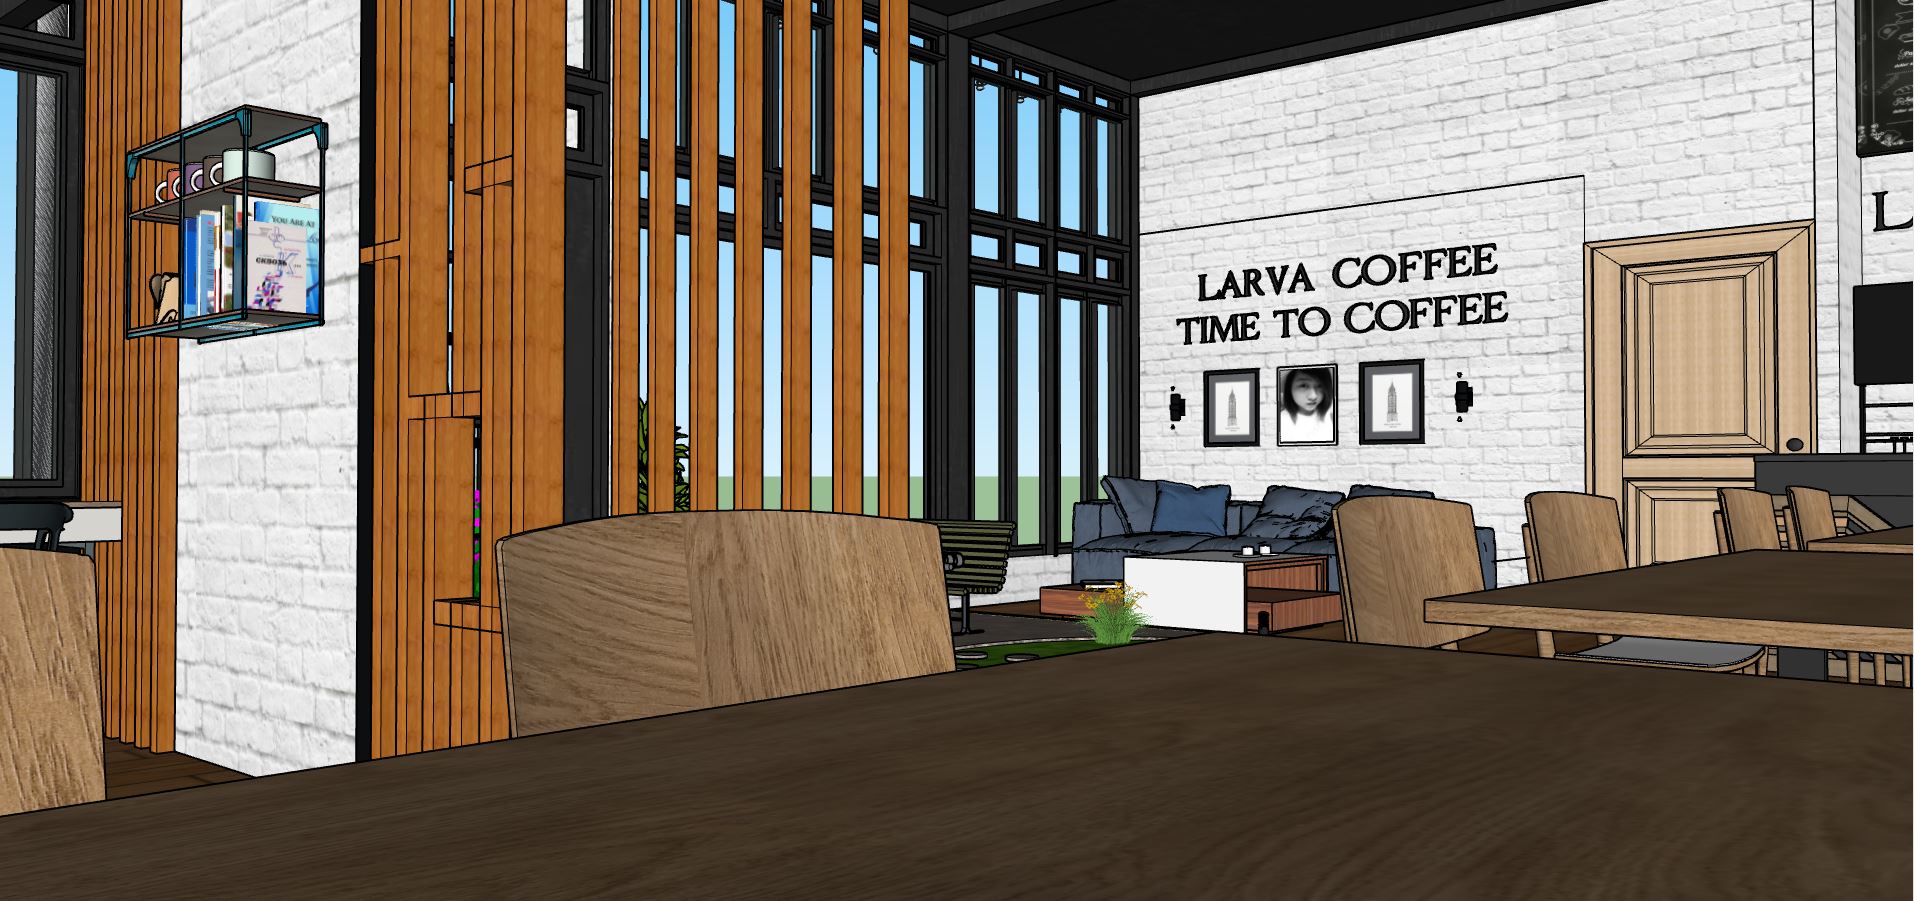 sketchup thiết kế quán cafe,sketchup coffee,mẫu quán cà phê sketchup,model quán coffee